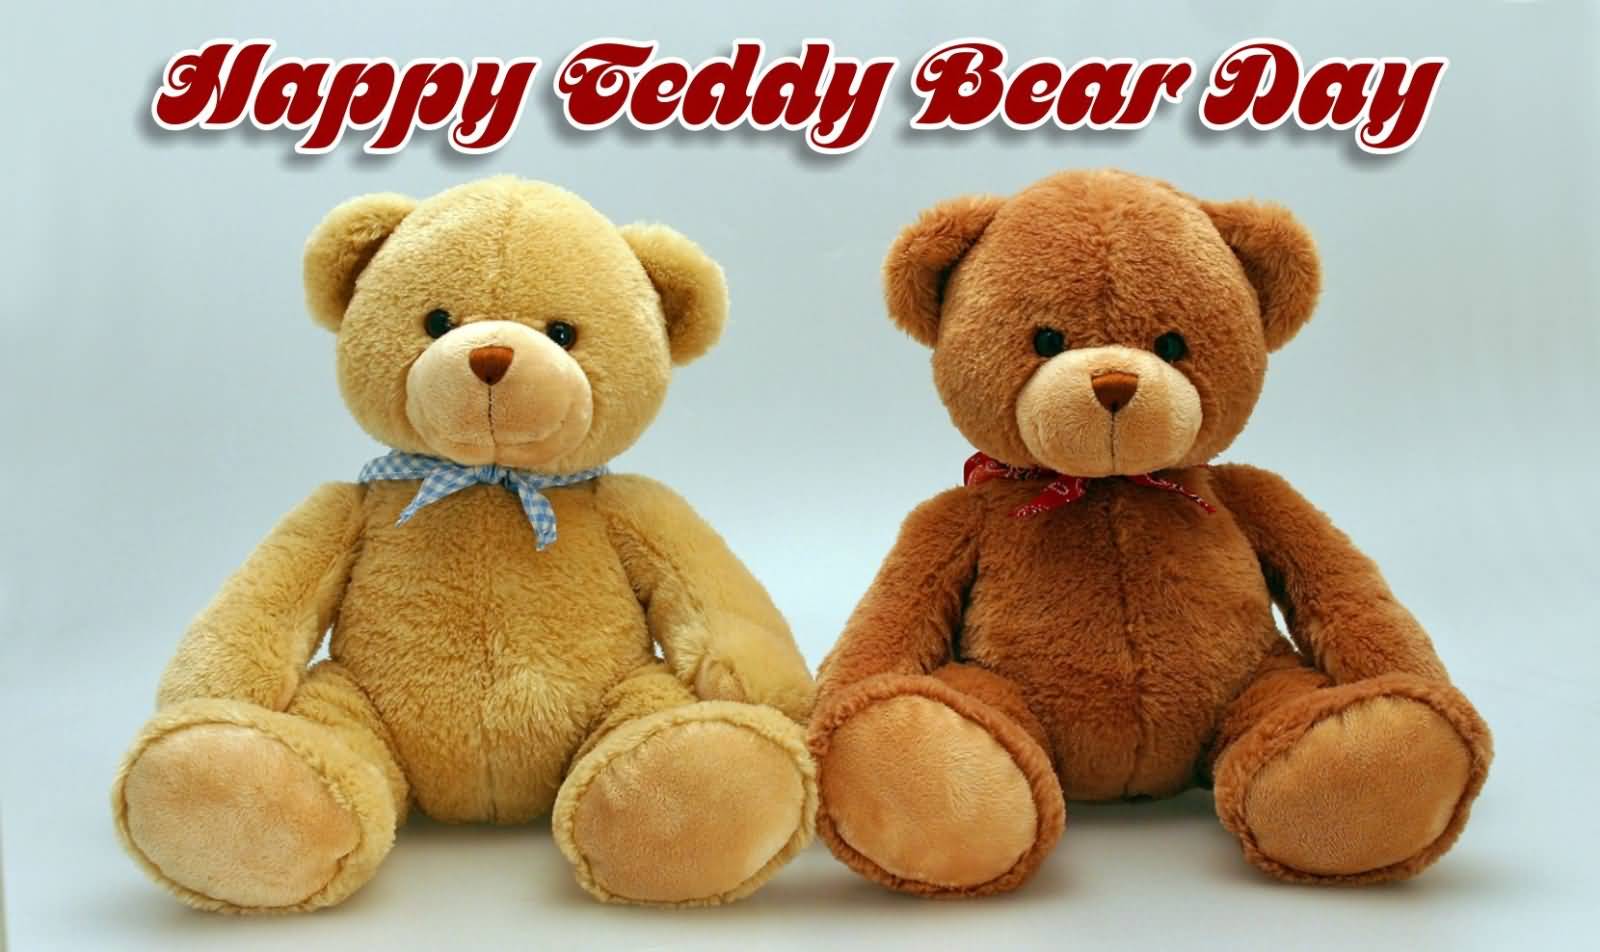 Happy Teddy Bear Day Two Teddy Bears Greeting Card